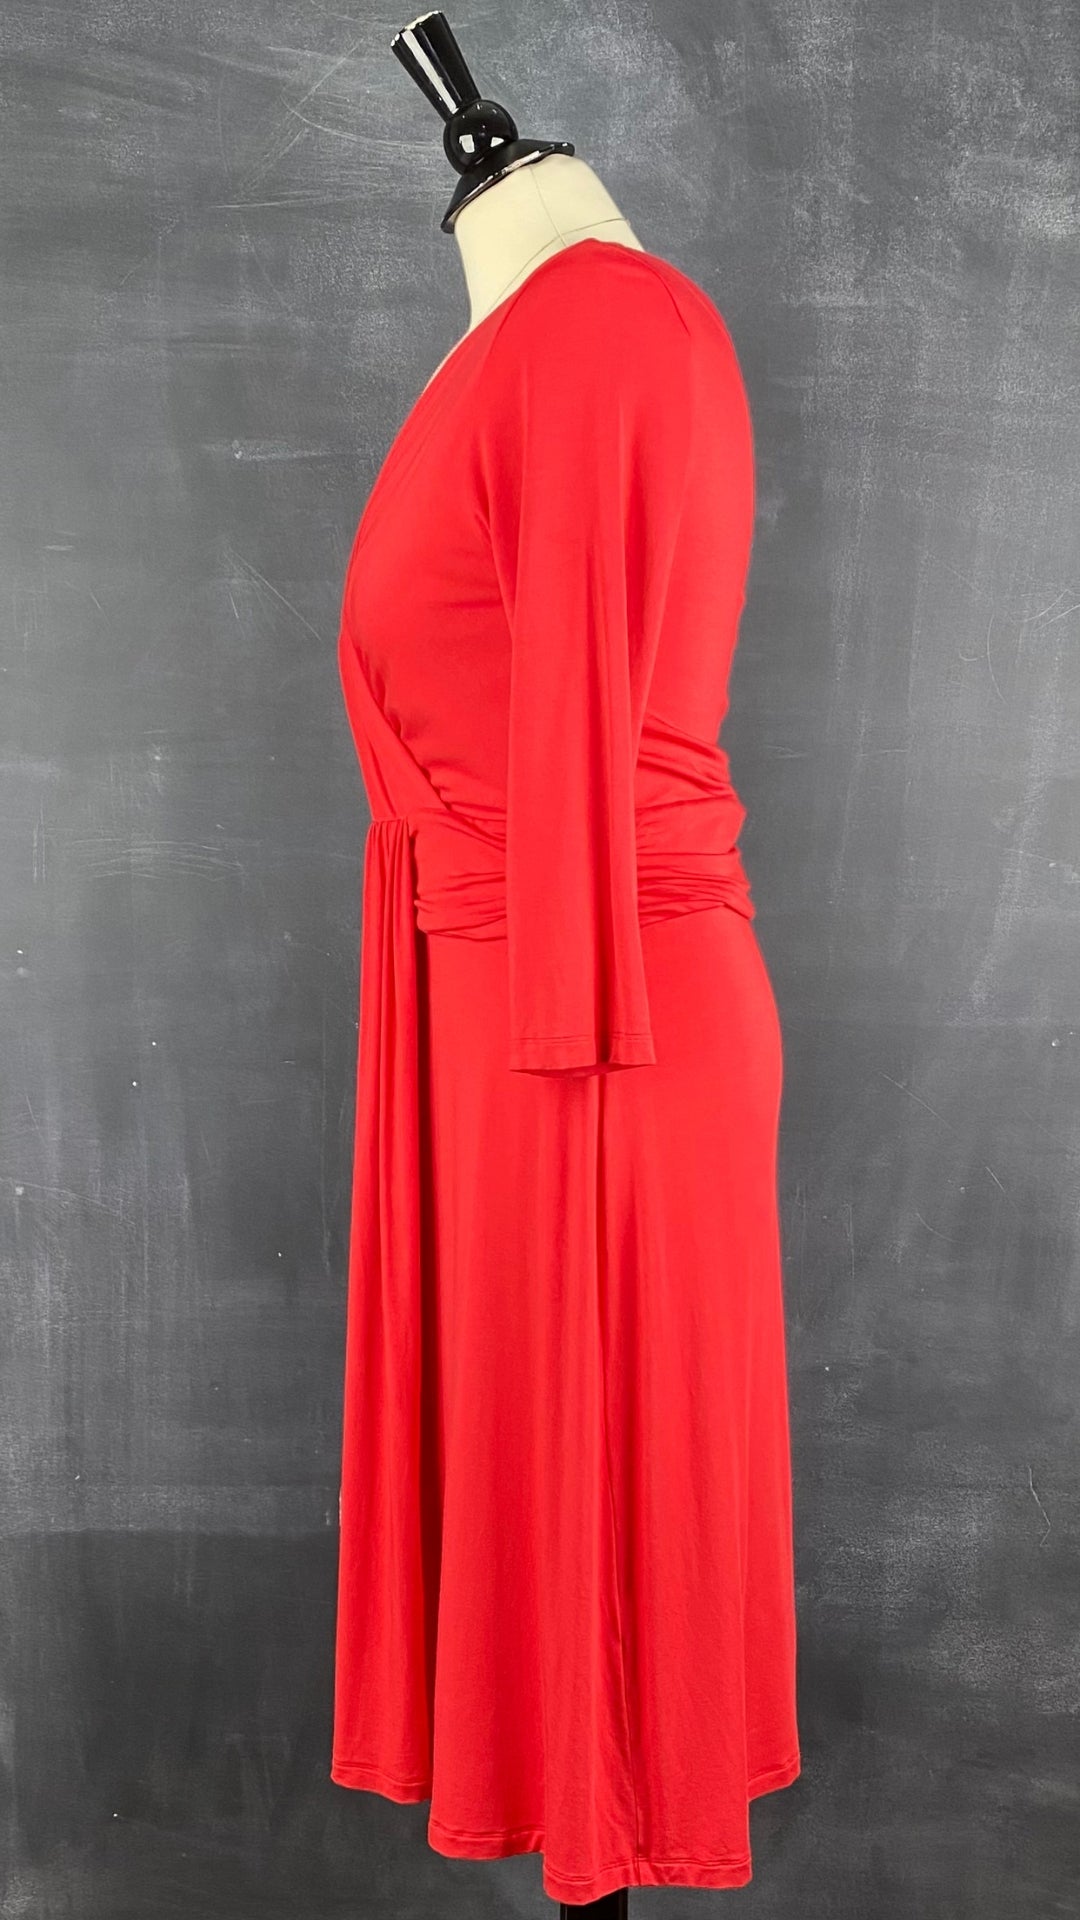 Robe rouge extensible cache-coeur drapé Tristan, taille medium. Vue de côté.